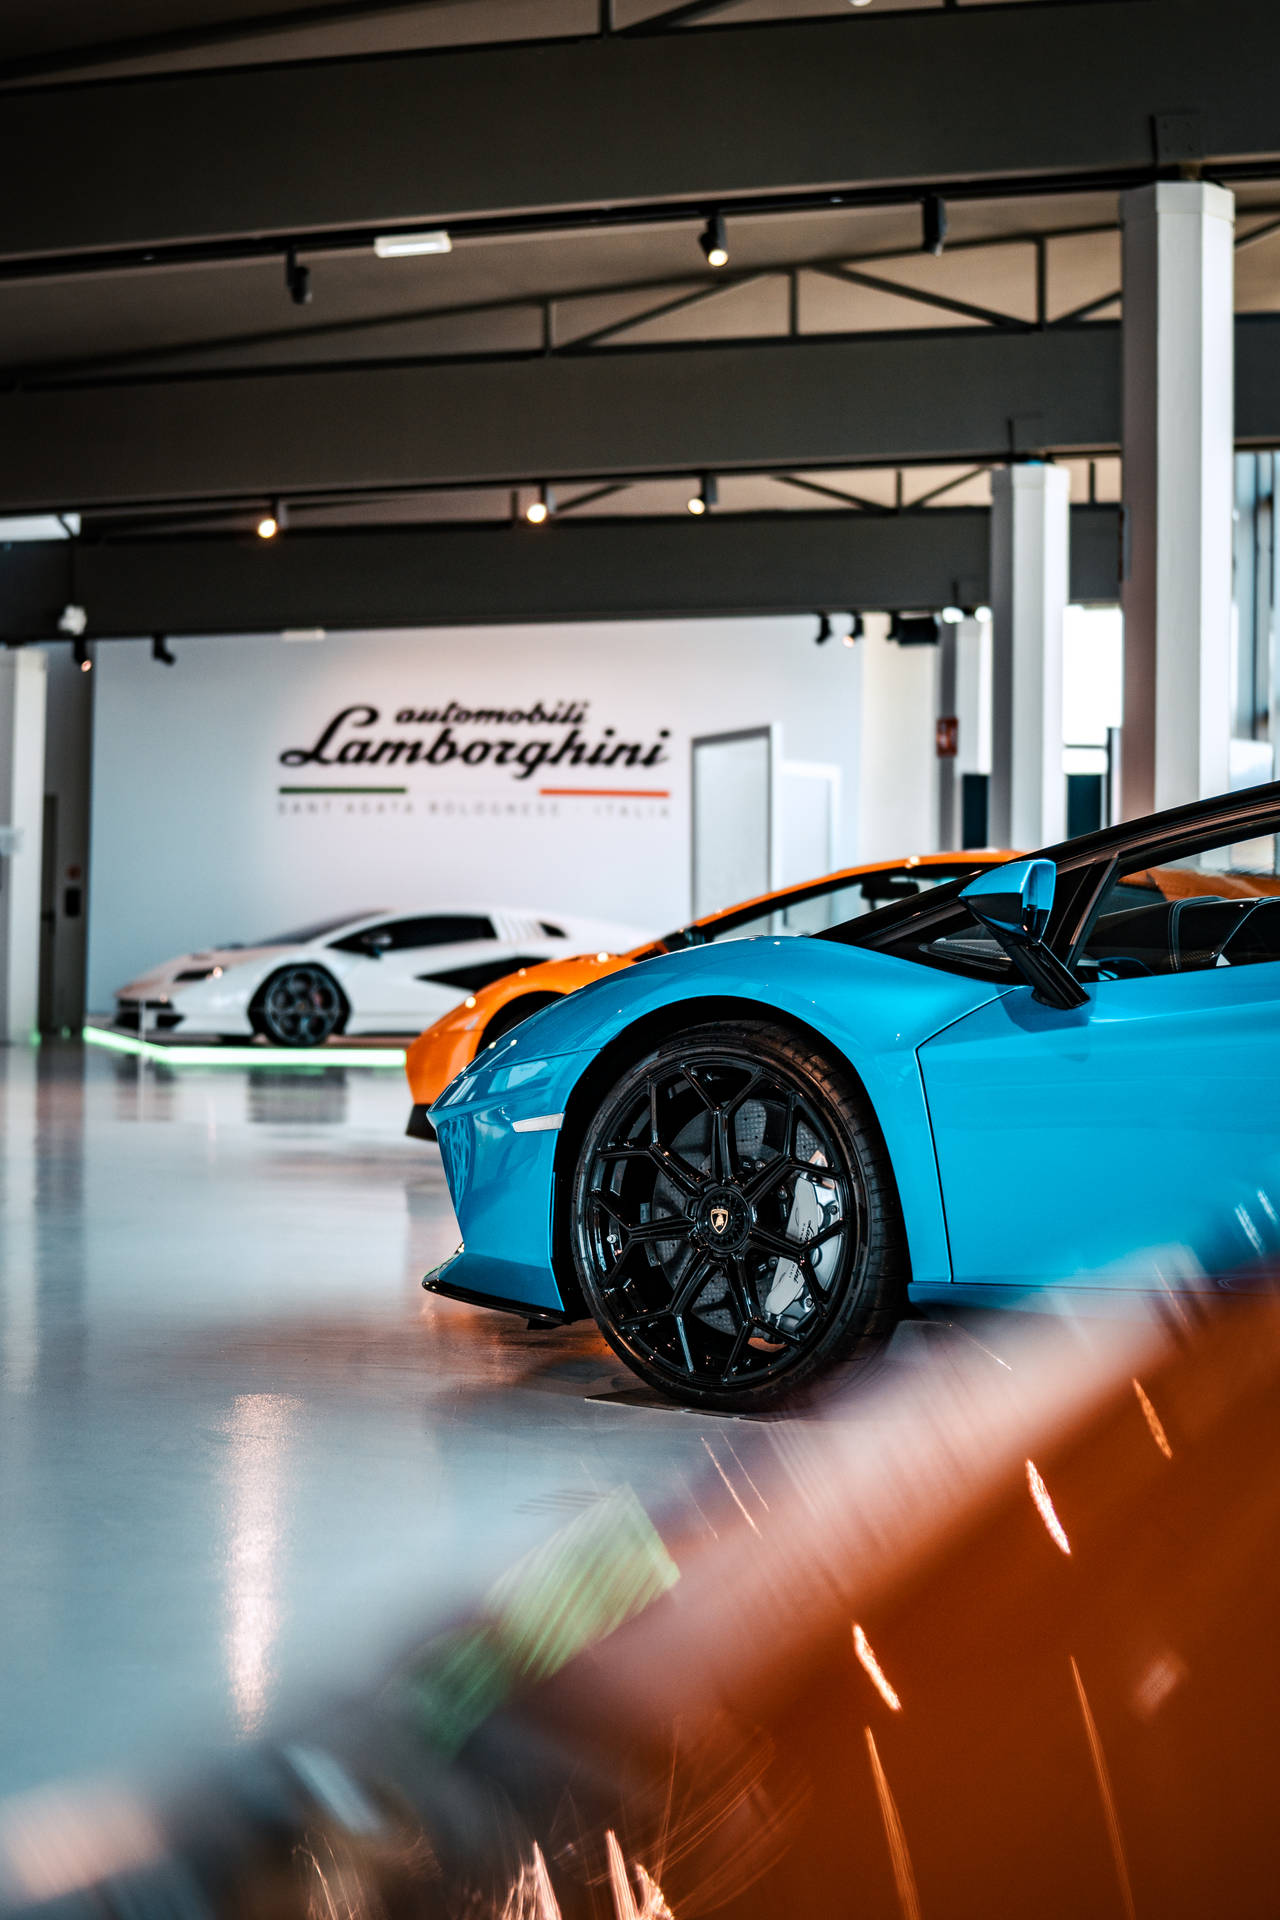 4k Lamborghini Show Room